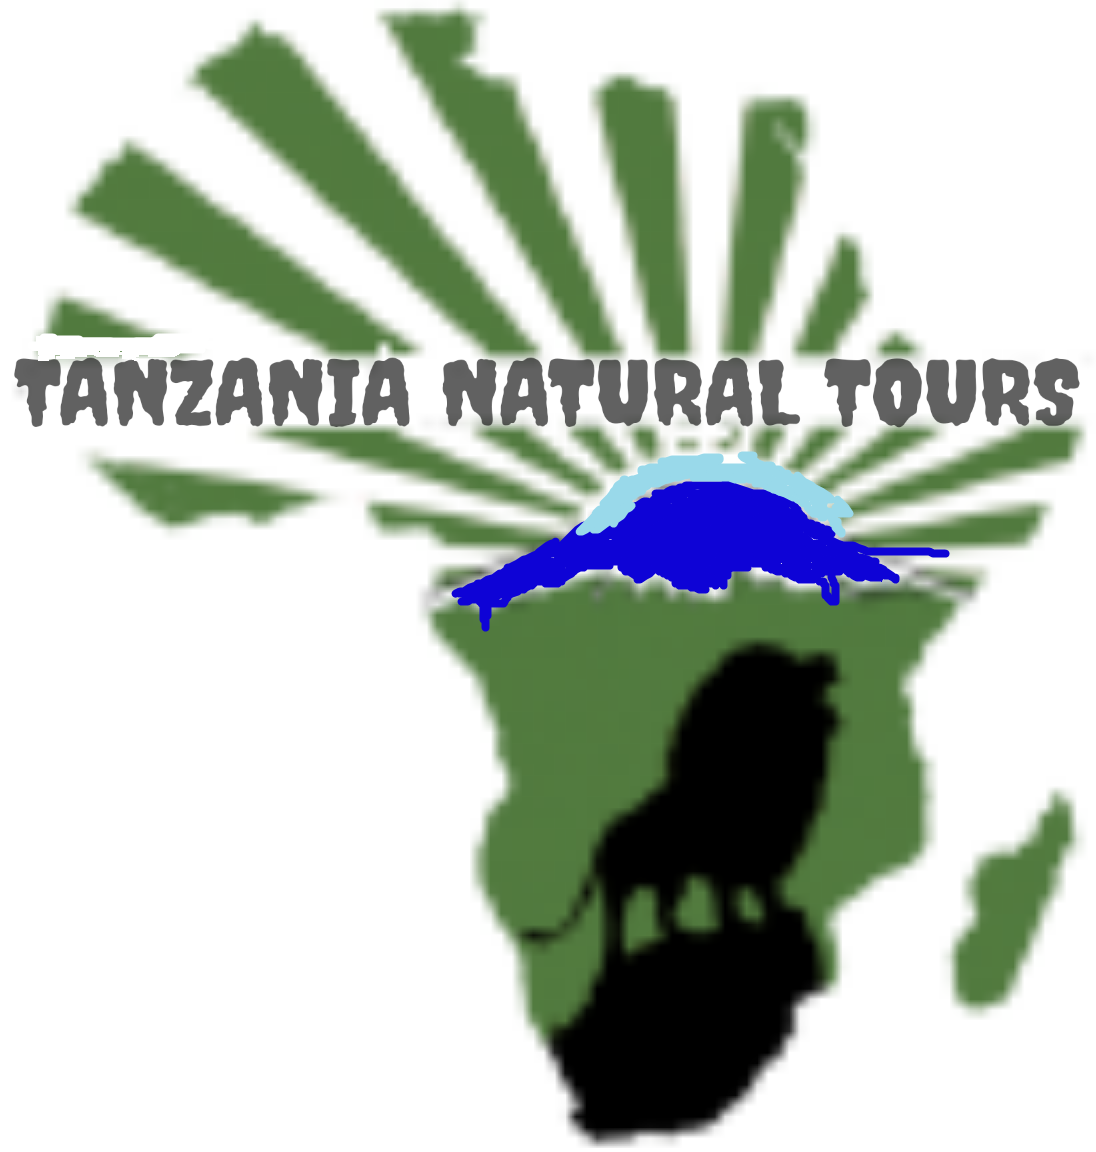 Tanzania Natural Tours logo